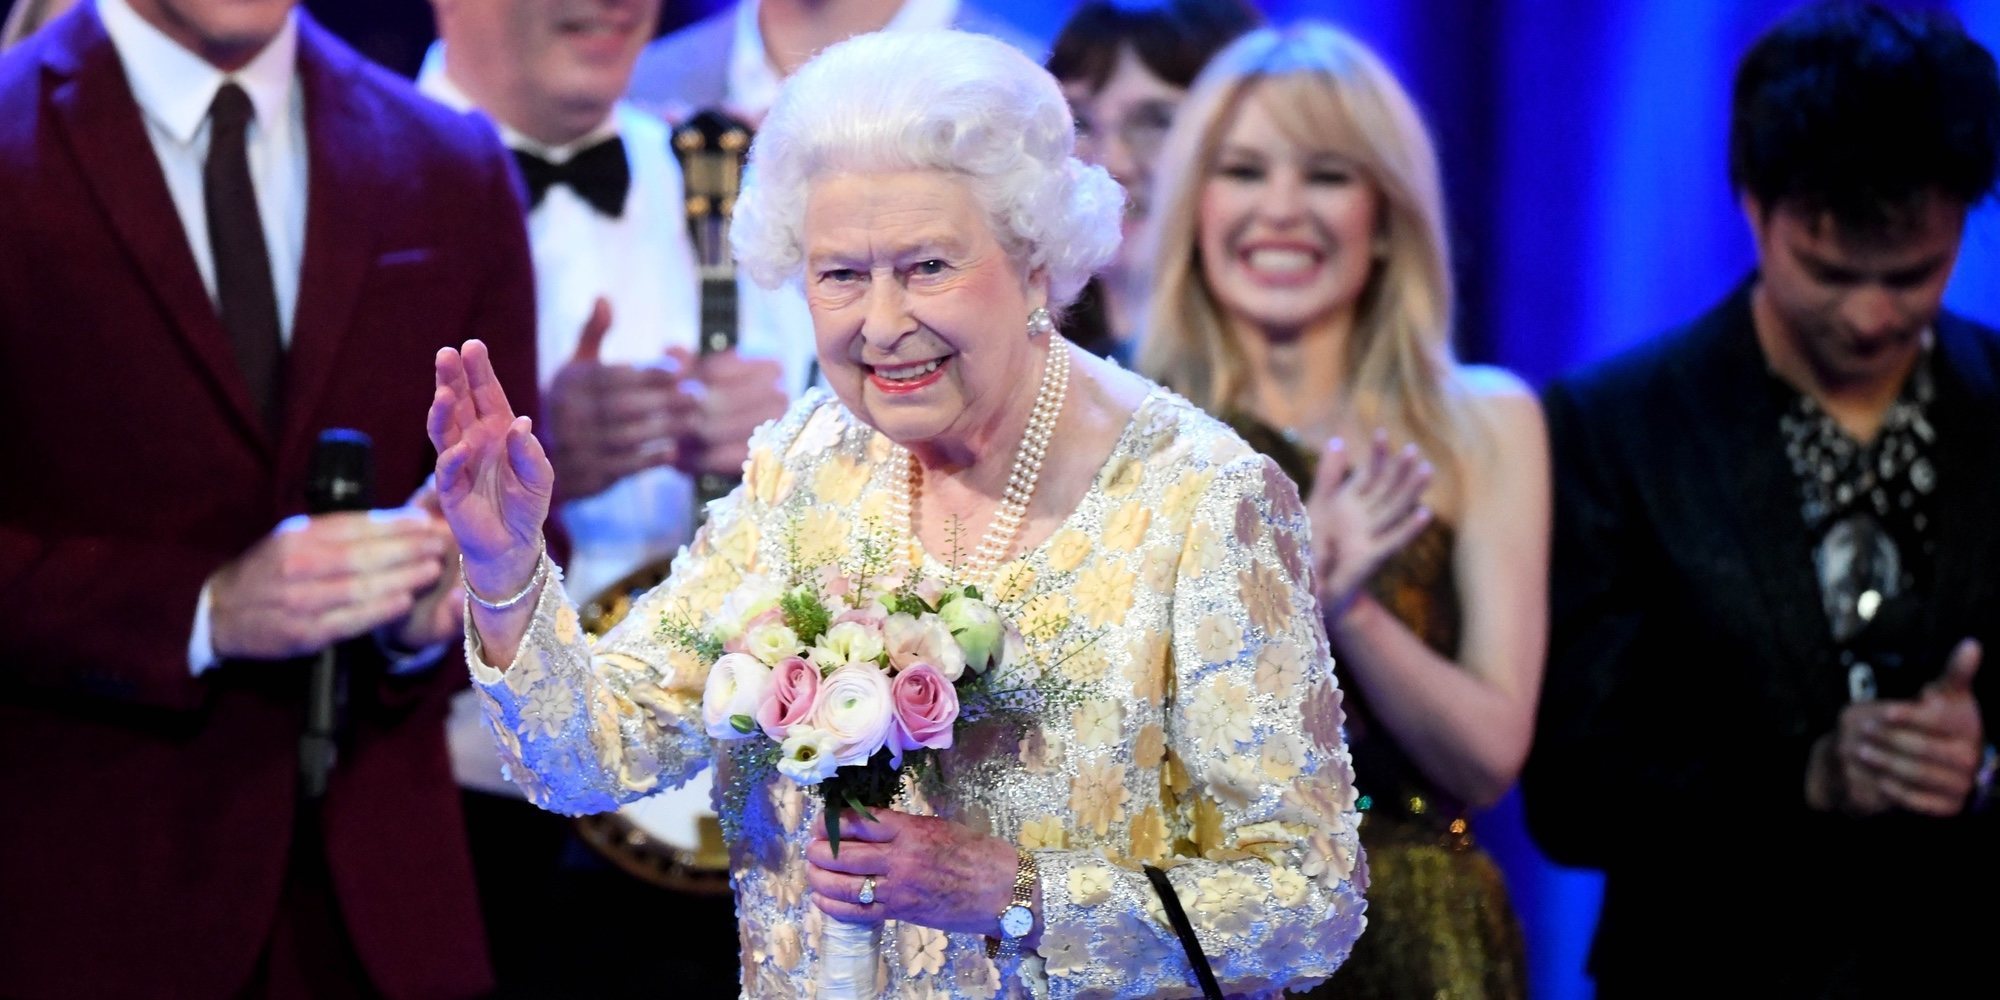 La Reina Isabel II celebra su 92 cumpleaños con un gran concierto en el Royal Albert Hall